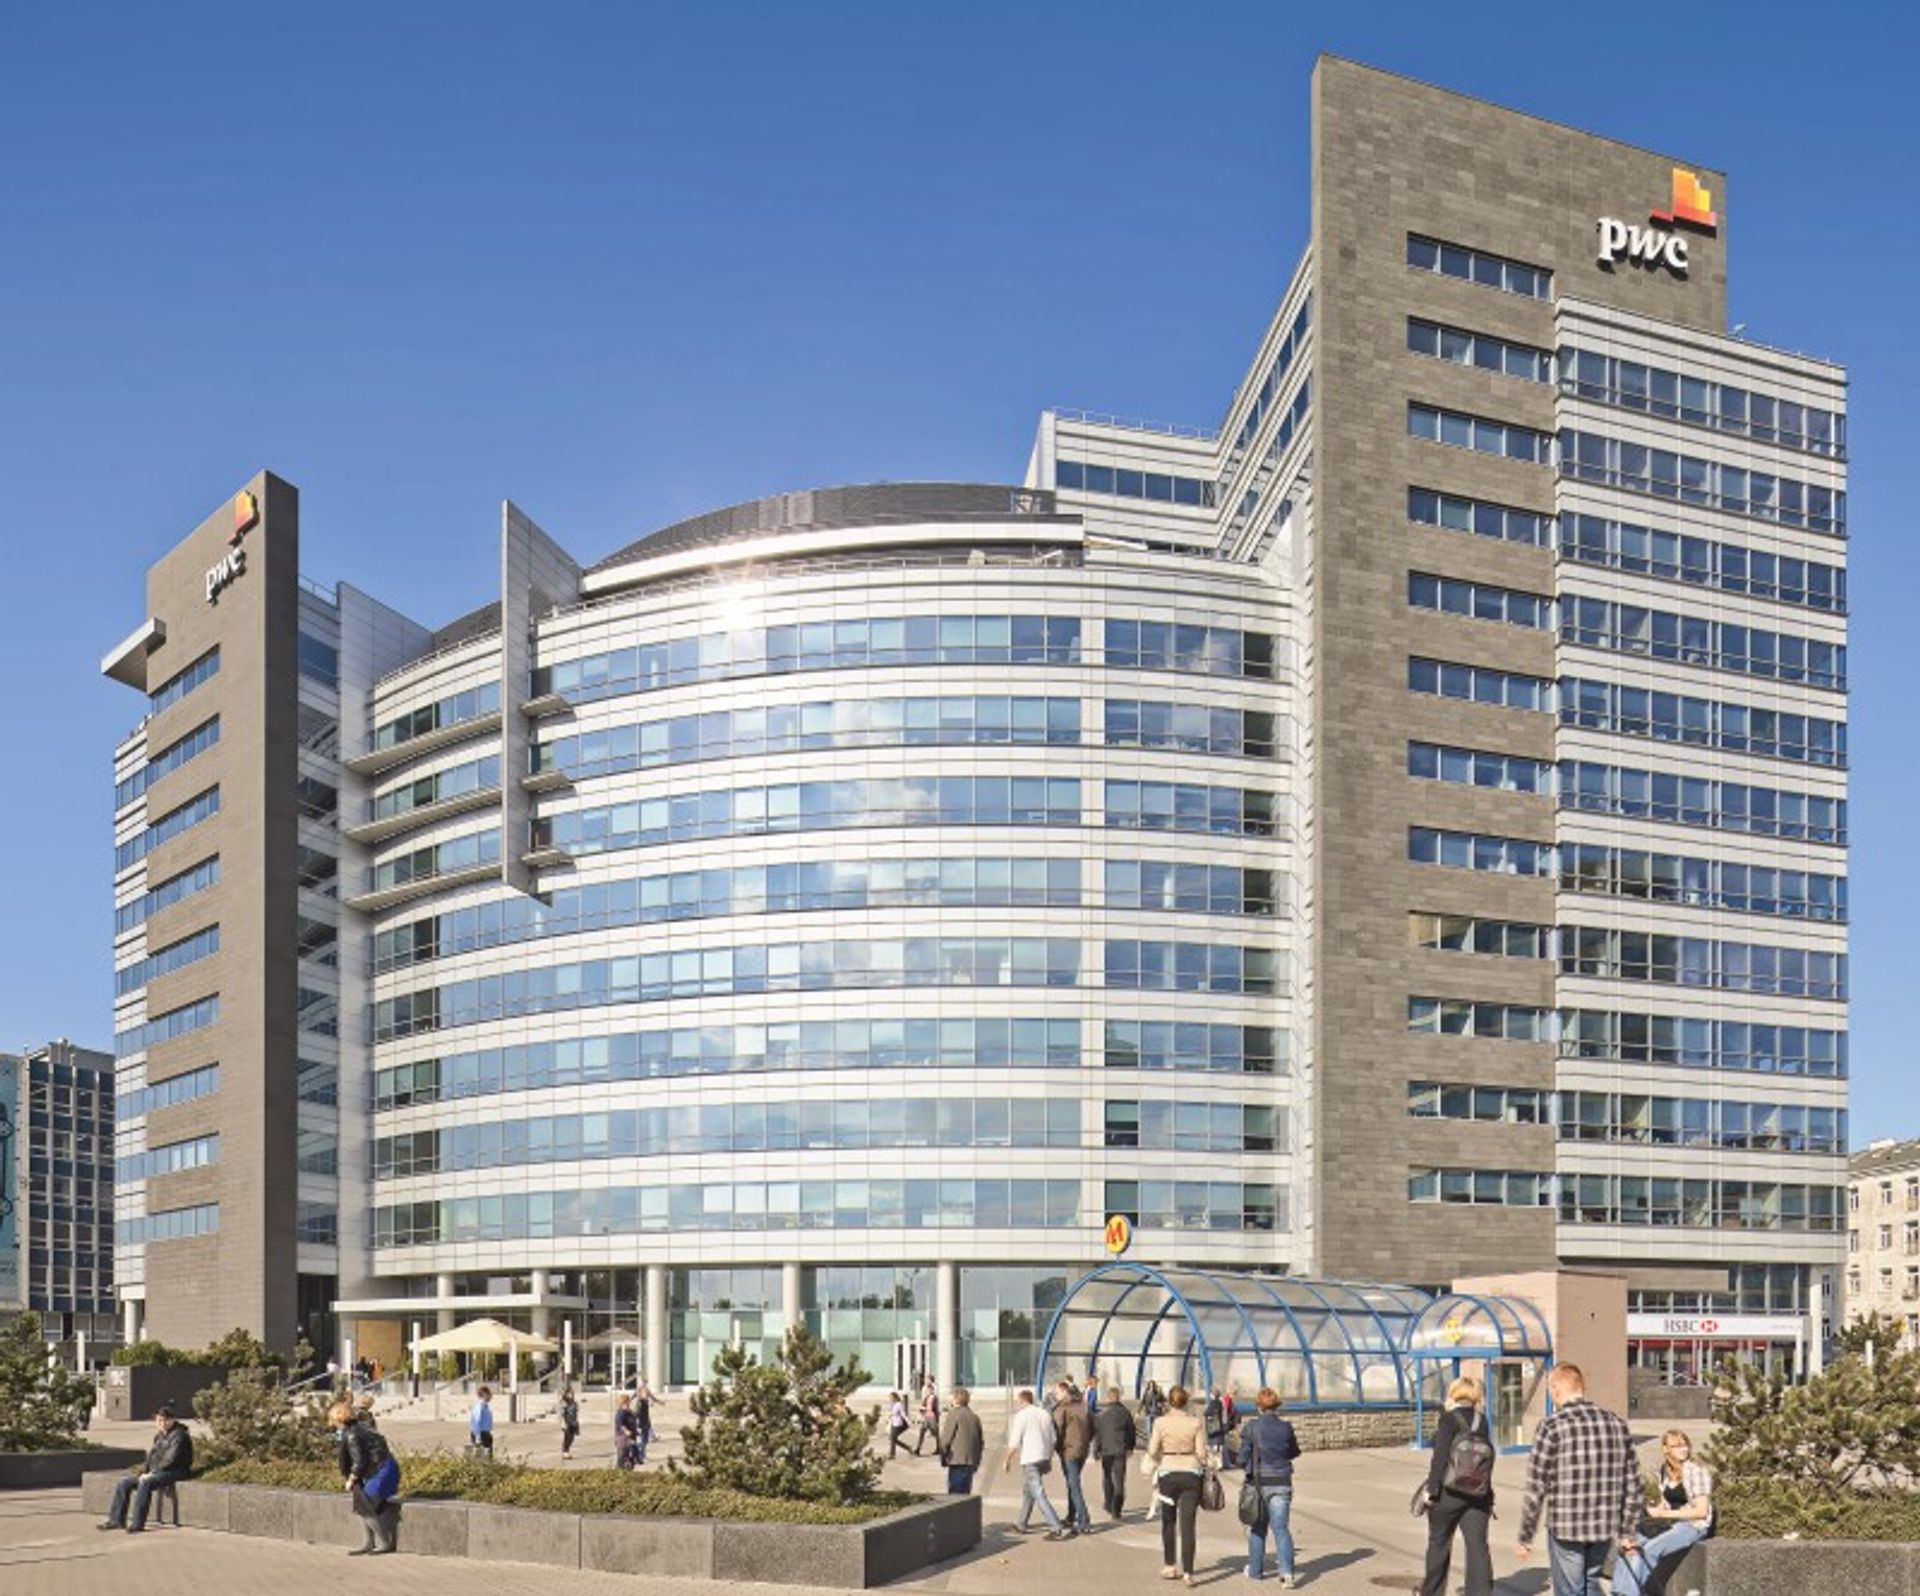  Deka Immobilien GmbH przejmuje warszawski biurowiec International Business Centre